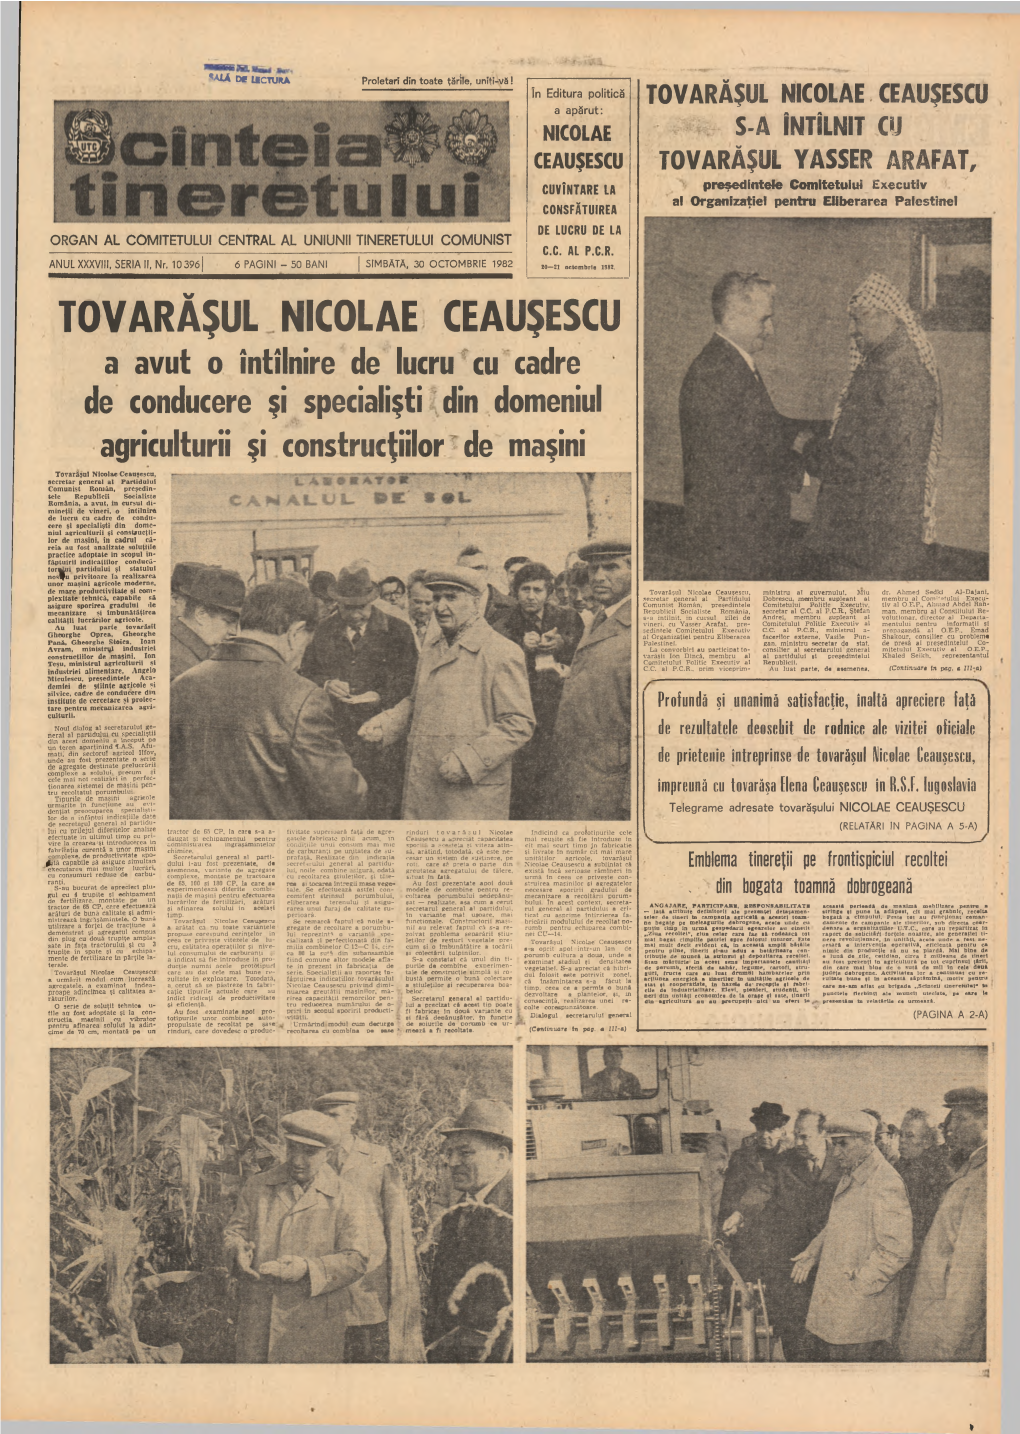 Tovarășul Nicolae Ceaușescu